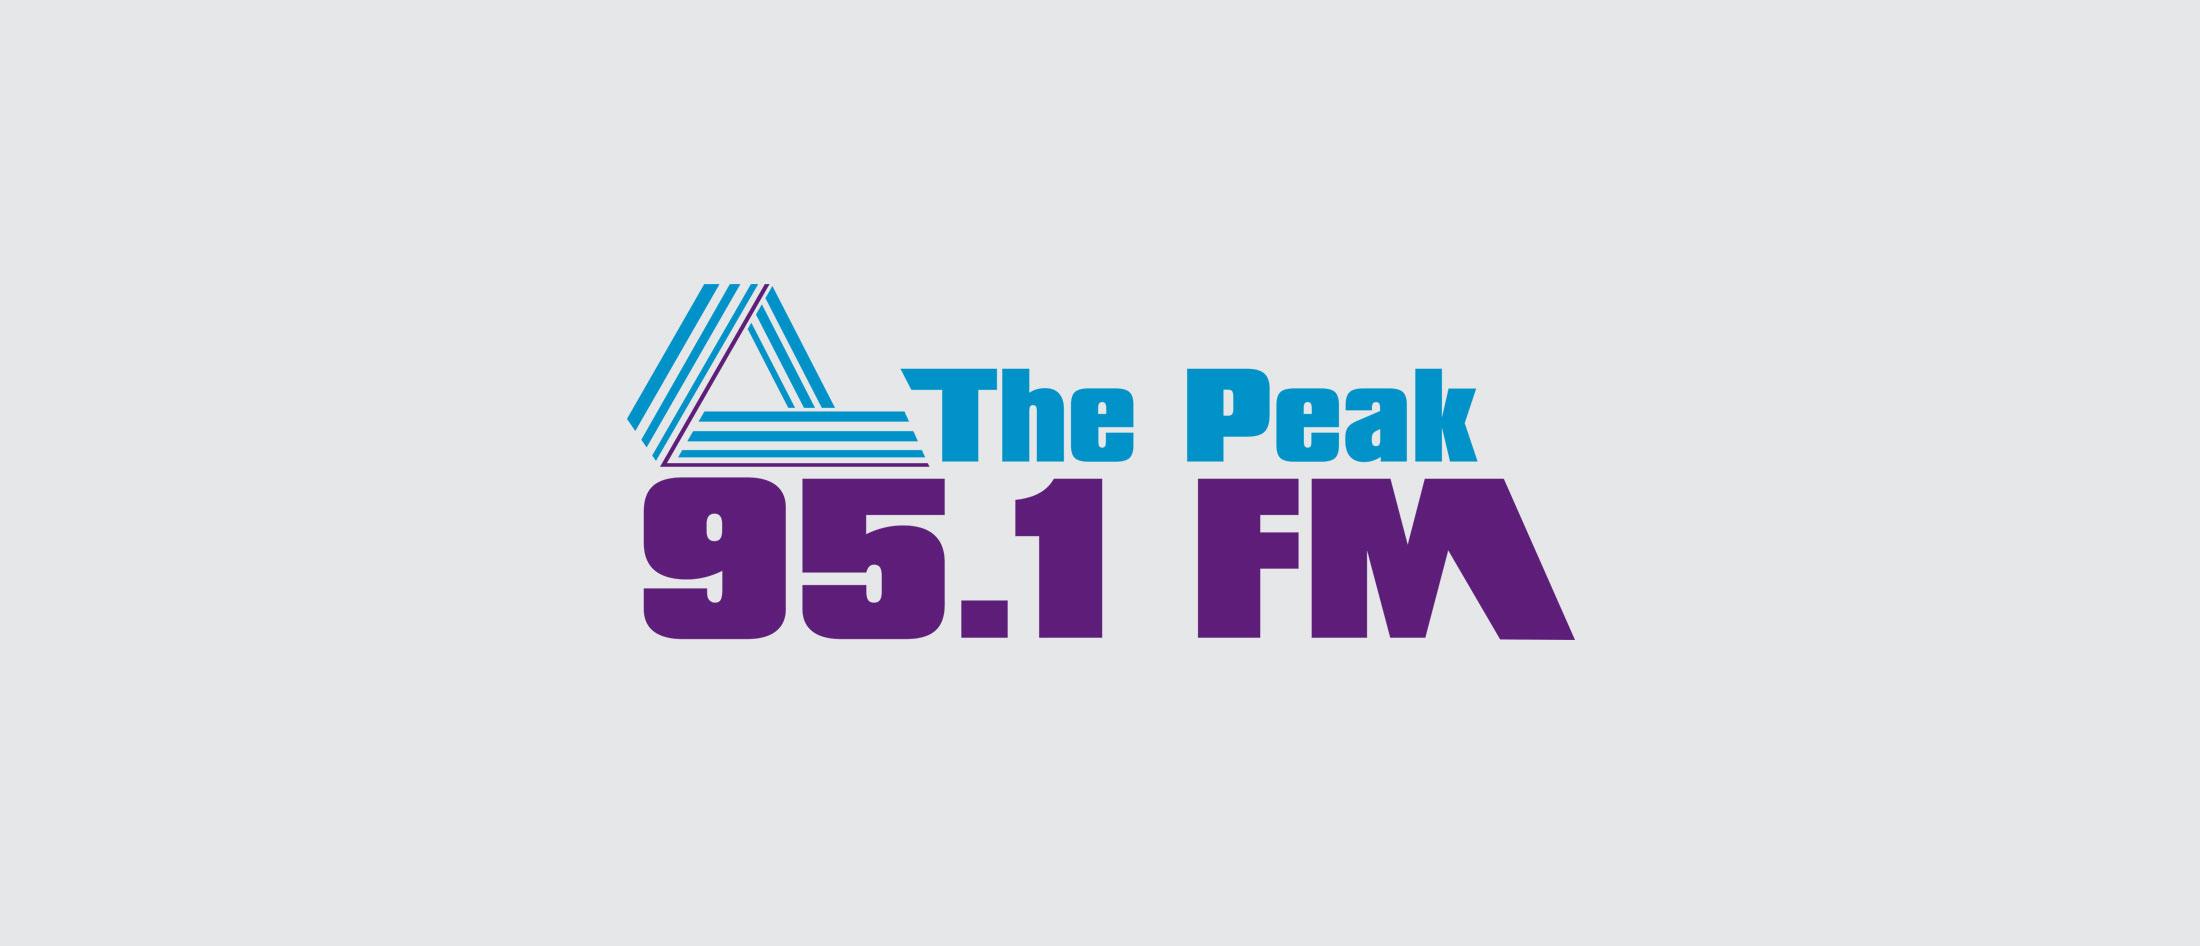 95.1 The Peak FM